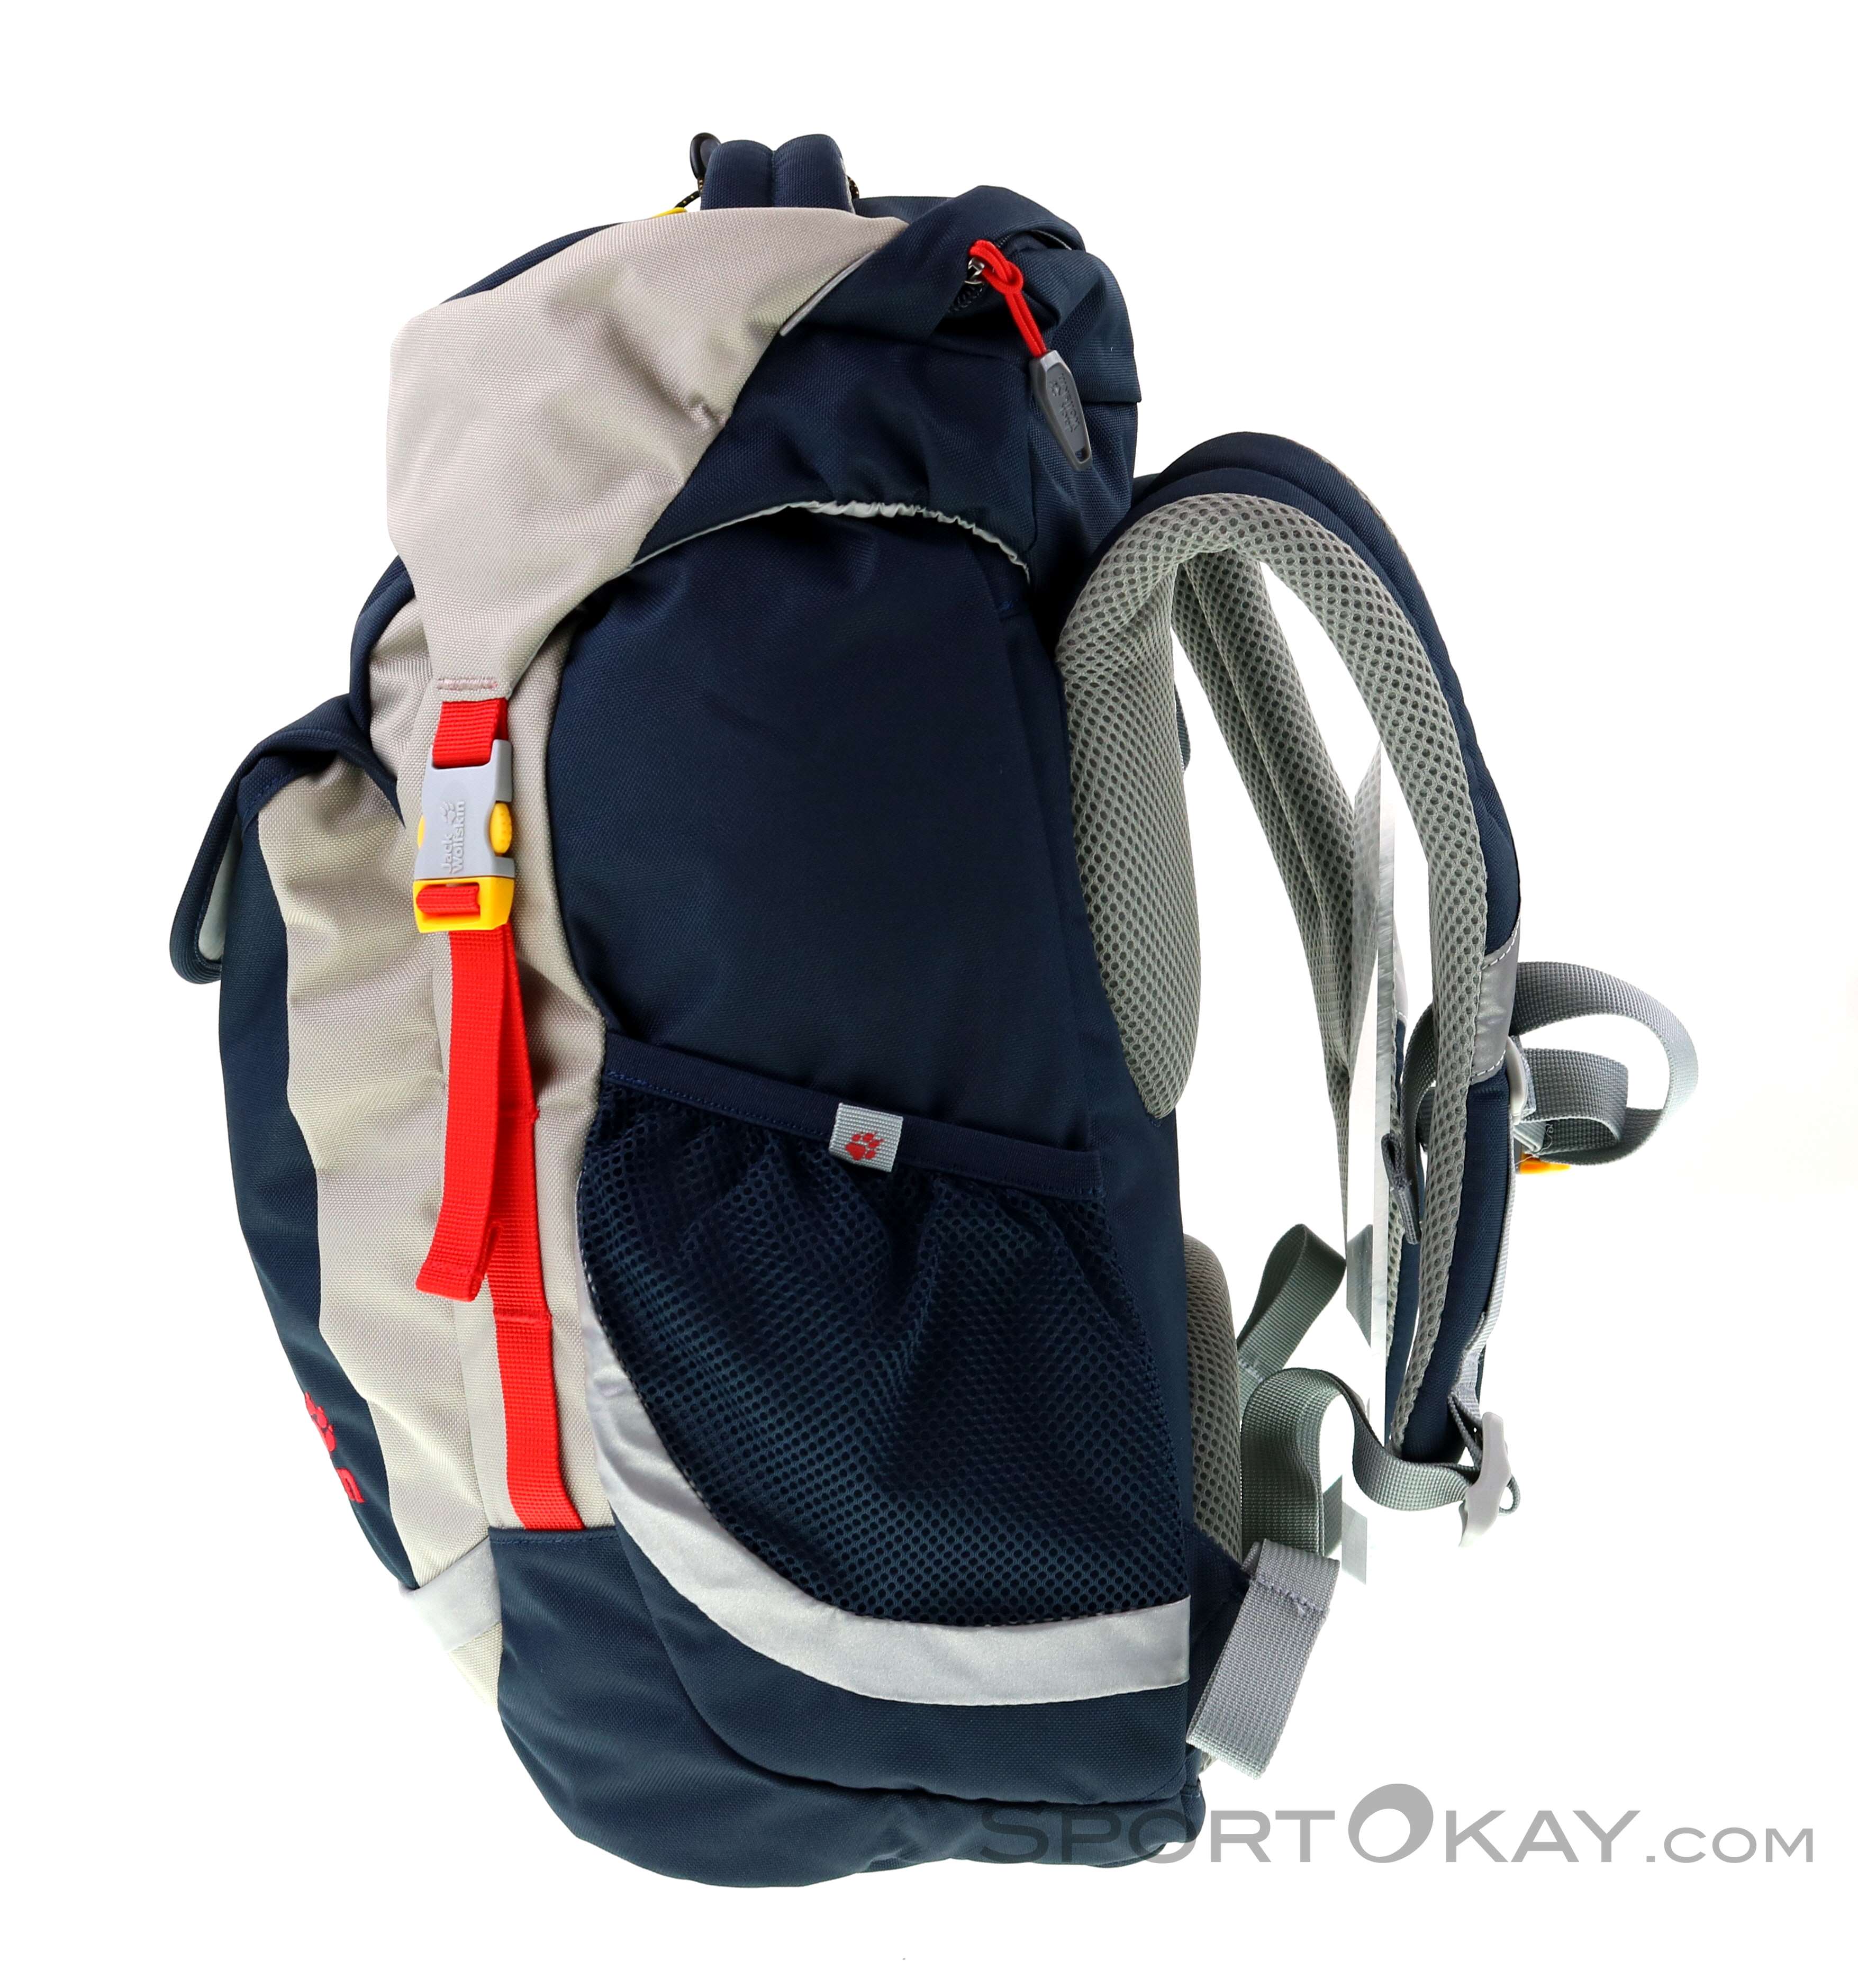 Jack Wolfskin Kids Outdoor - & Headlamps Backpack Explorer Backpacks - Kids Backpacks - All - 20l